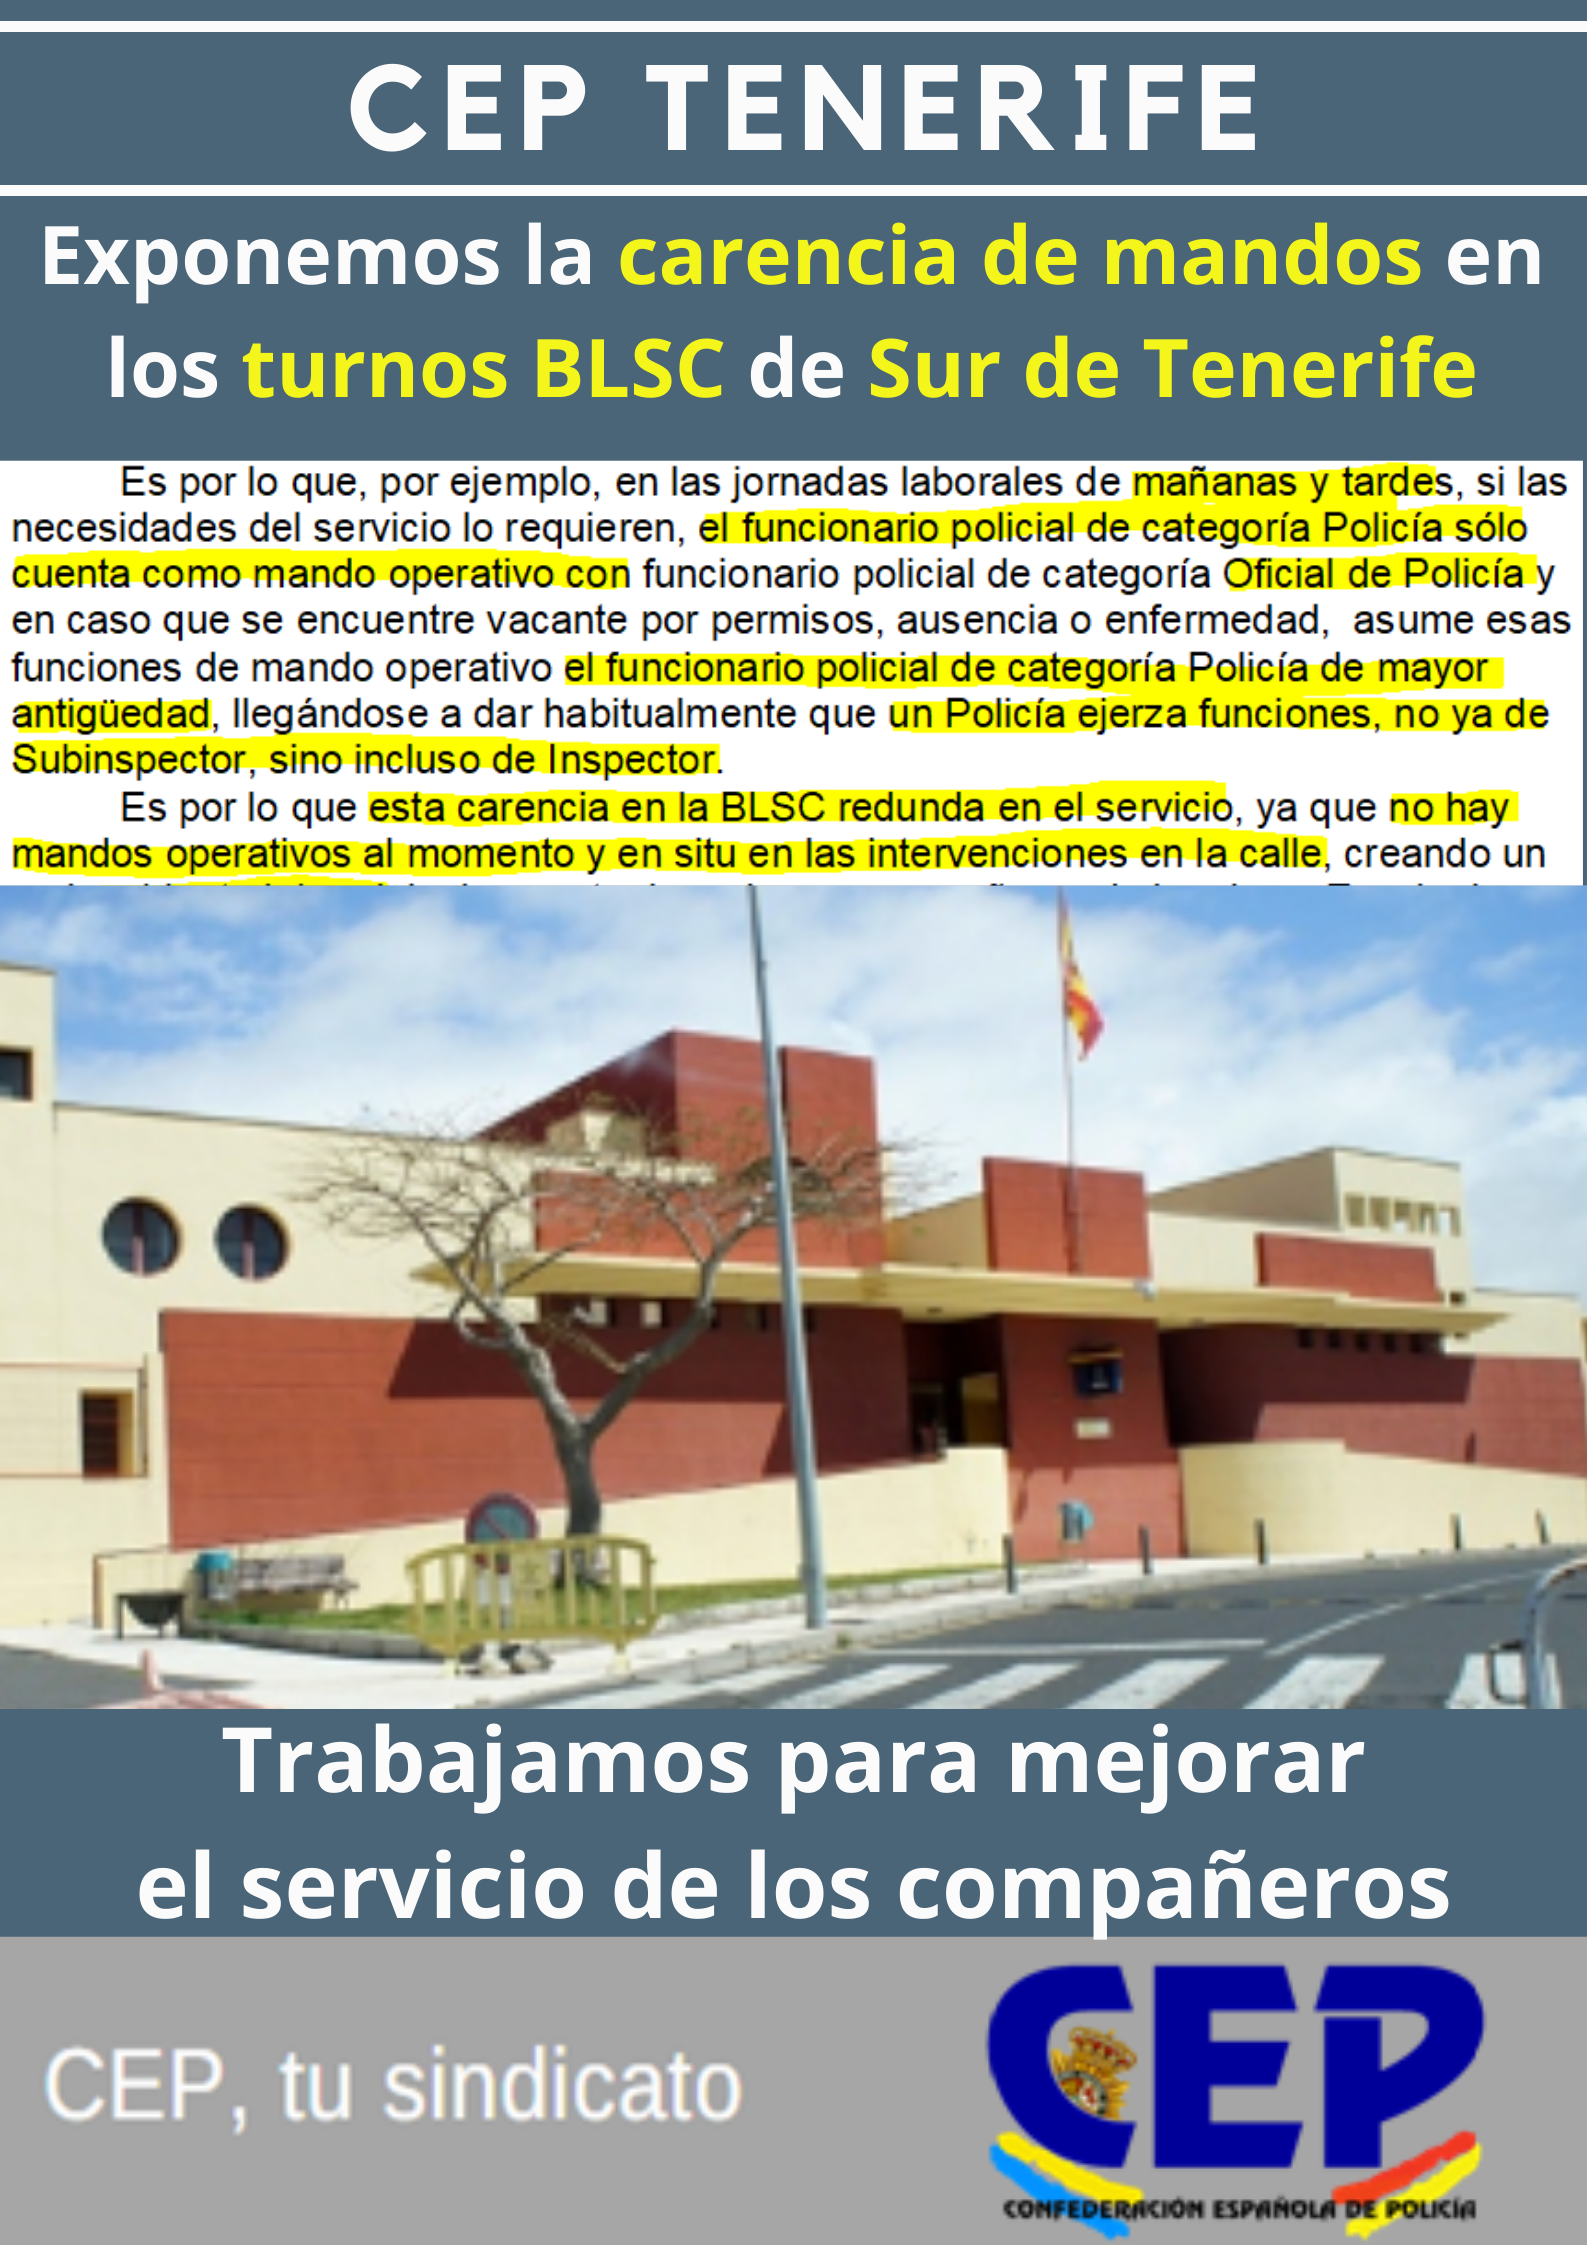 Exponemos la carencia de mandos en los turnos BLSC Sur de Tenerife